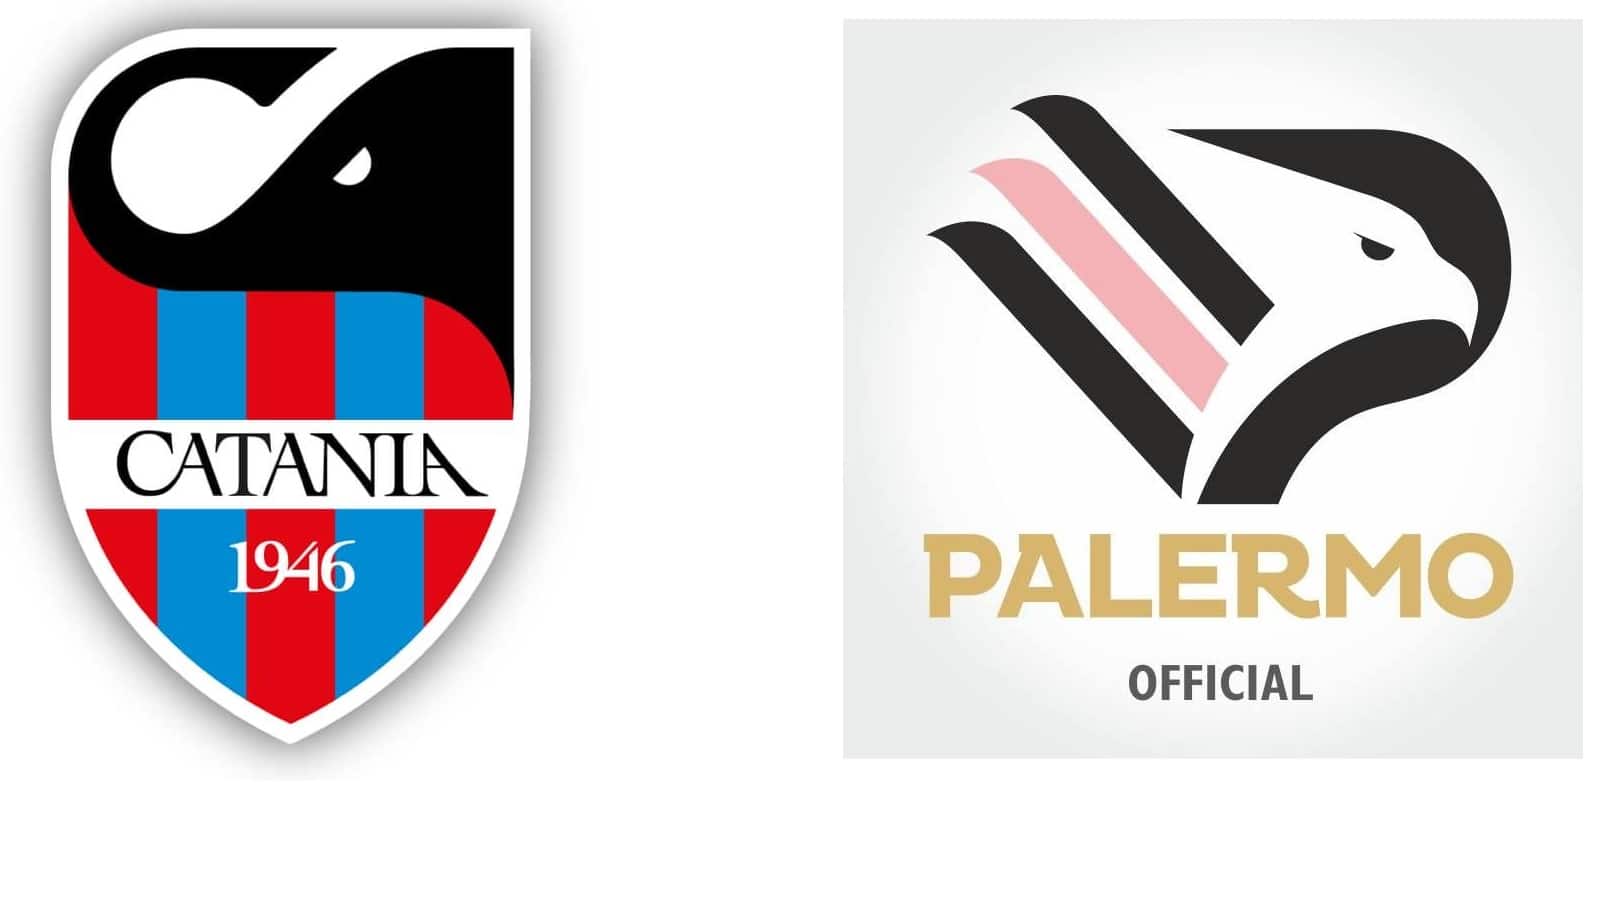 Catania SSD e Palermo Calcio: destini simili, partenze differenti